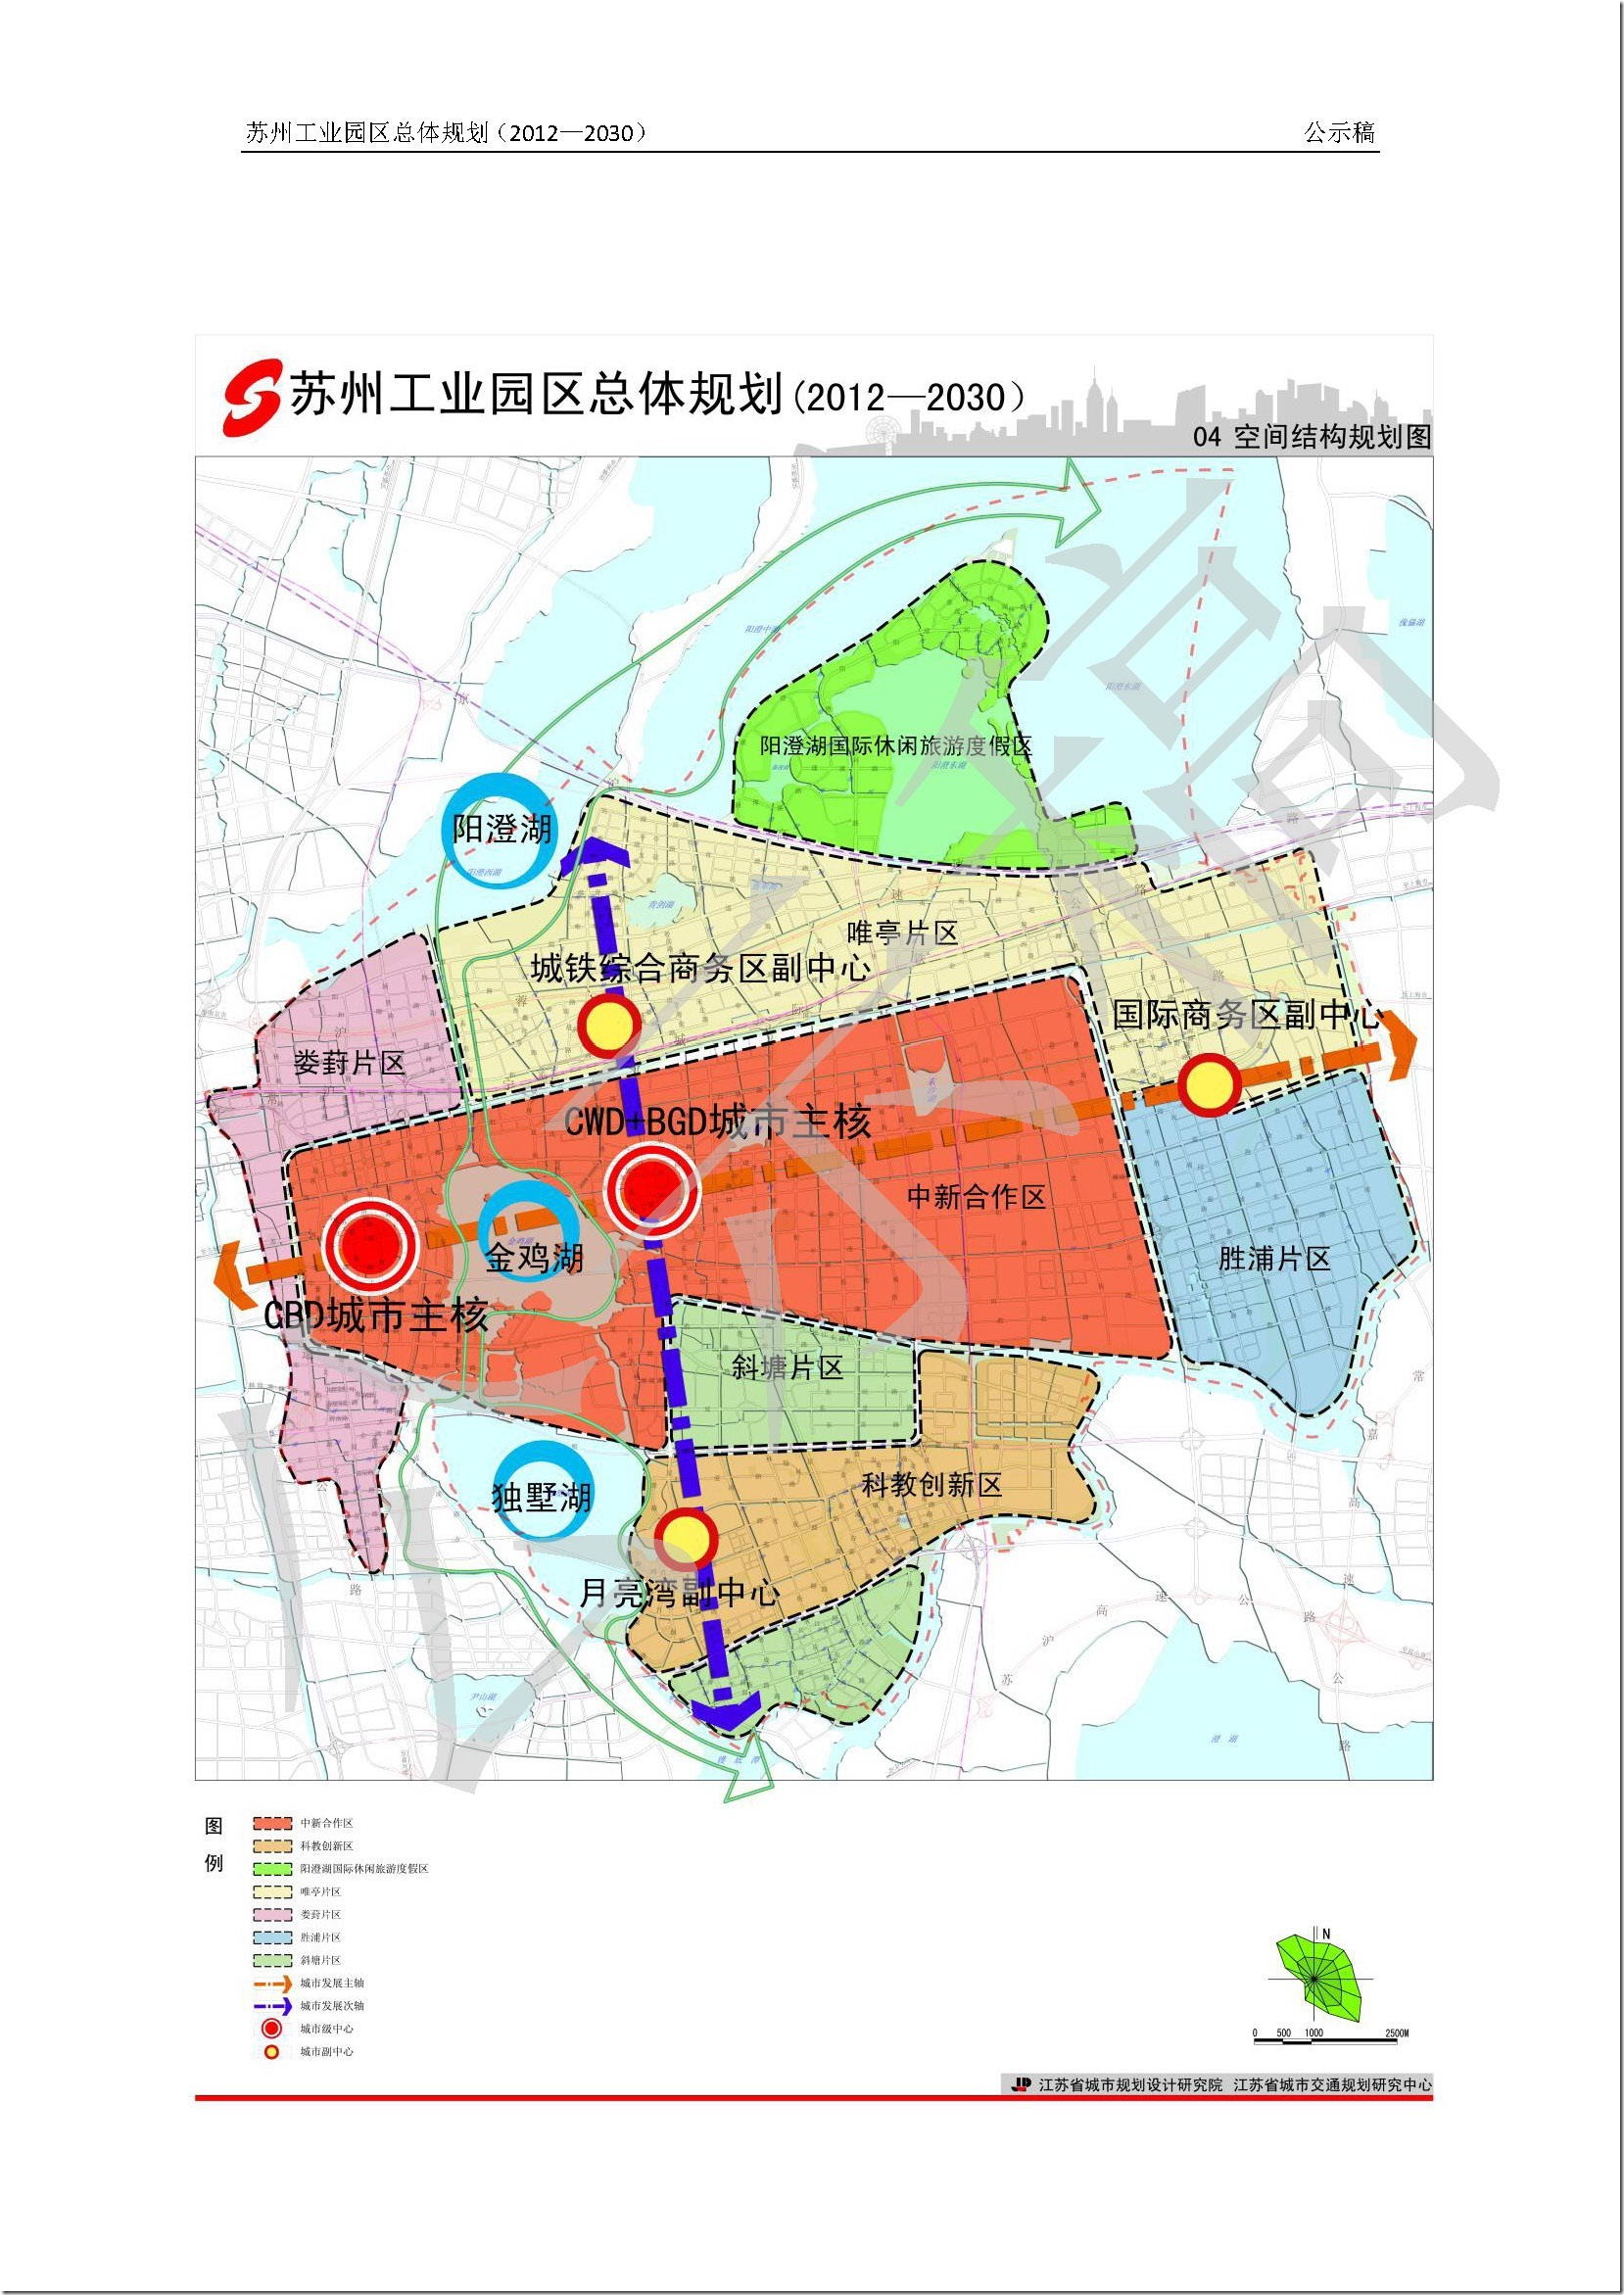 【整理】苏州工业园区总体规划(2012-2030)公示稿 | 在路上